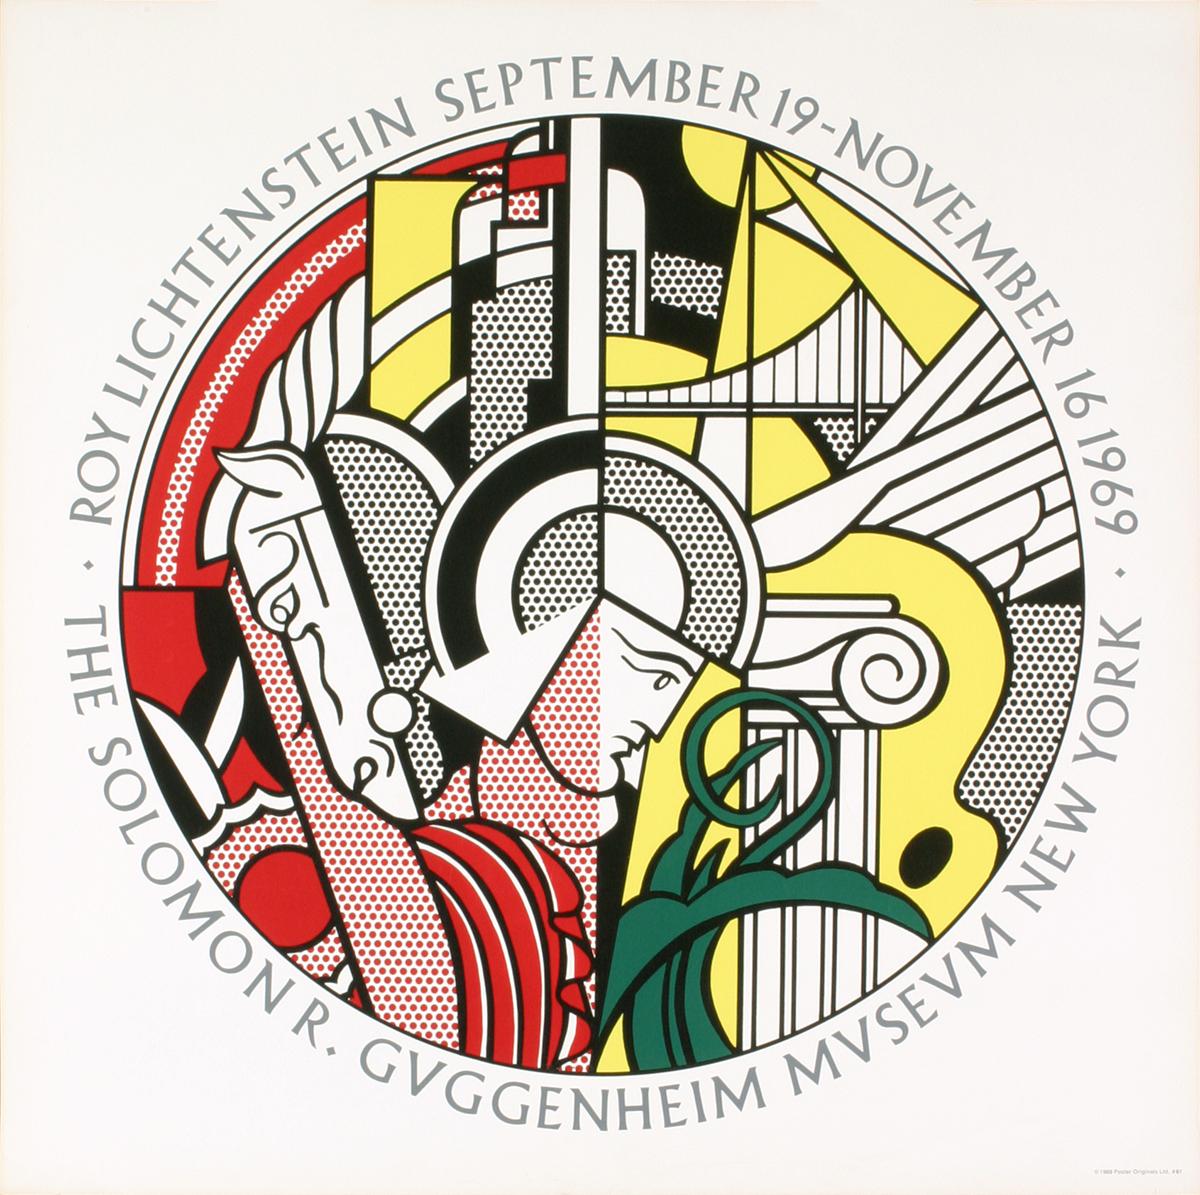 Roy Lichtenstein-Guggenheim Museum-1969 Serigraphie ORIGINAL